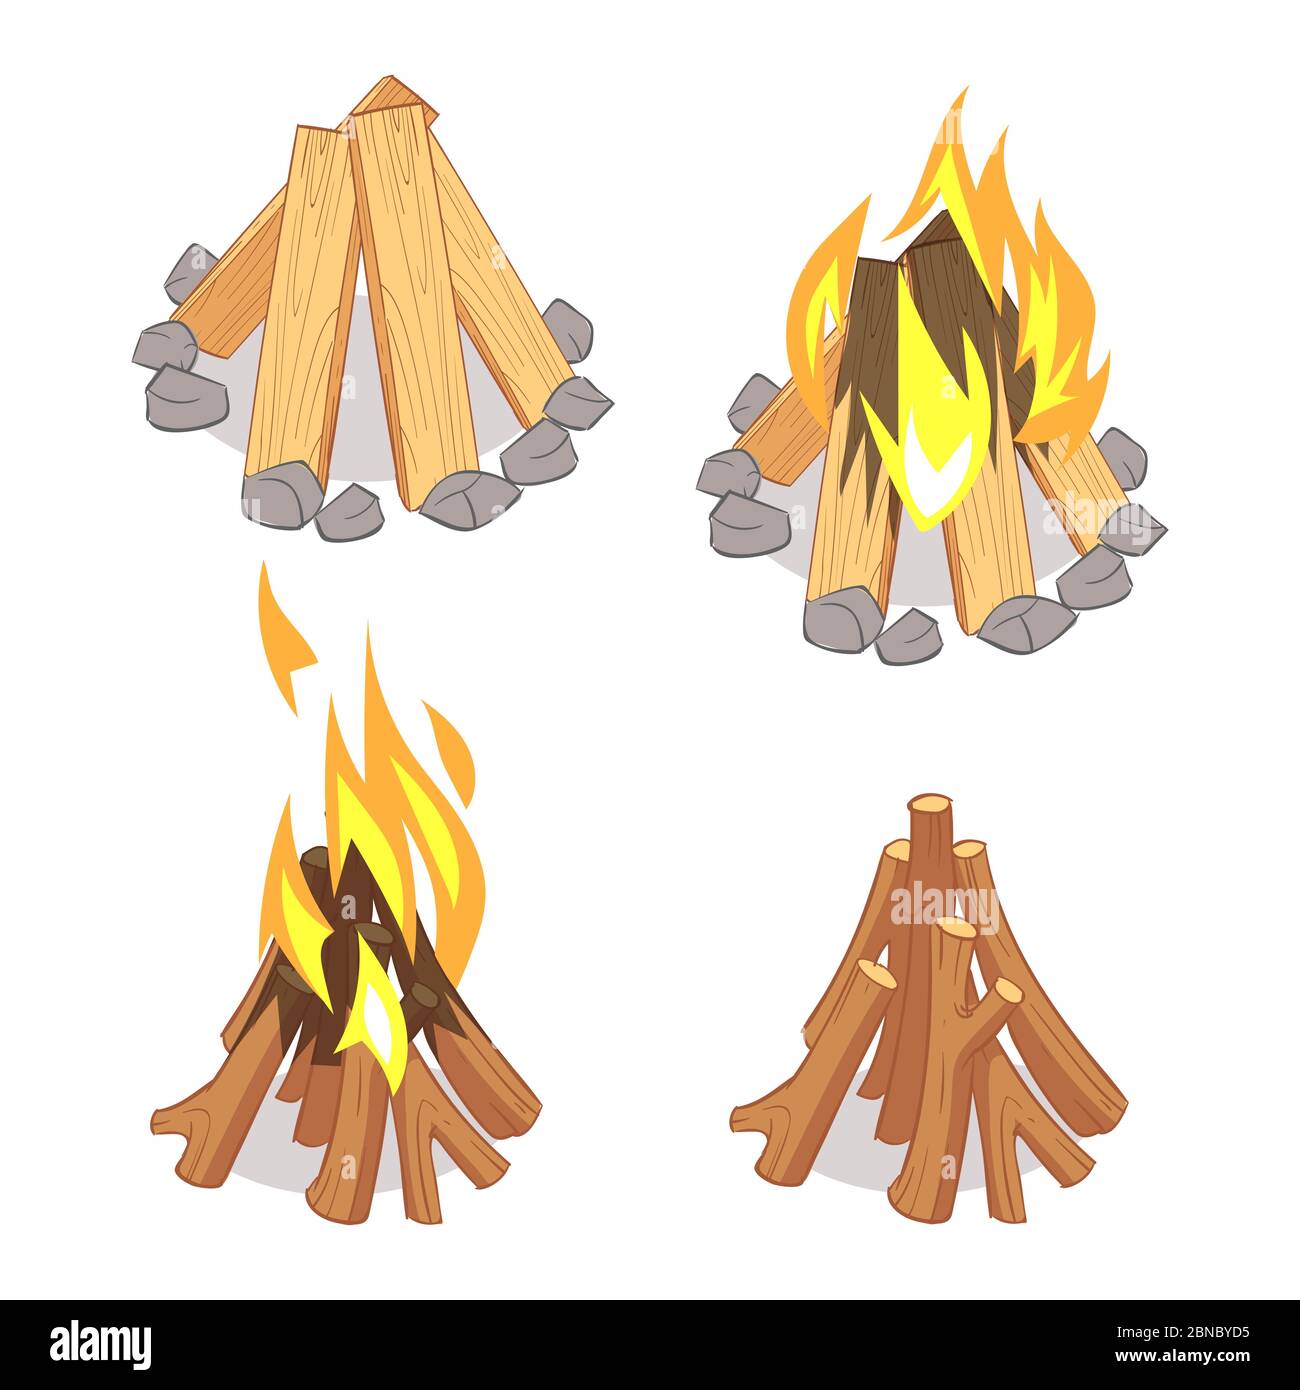 Personnage de dessin animé, bois de rondins et feu de camp isolé sur fond blanc. Illustration de feu de camp et de bois de chauffage, feu de camp Illustration de Vecteur